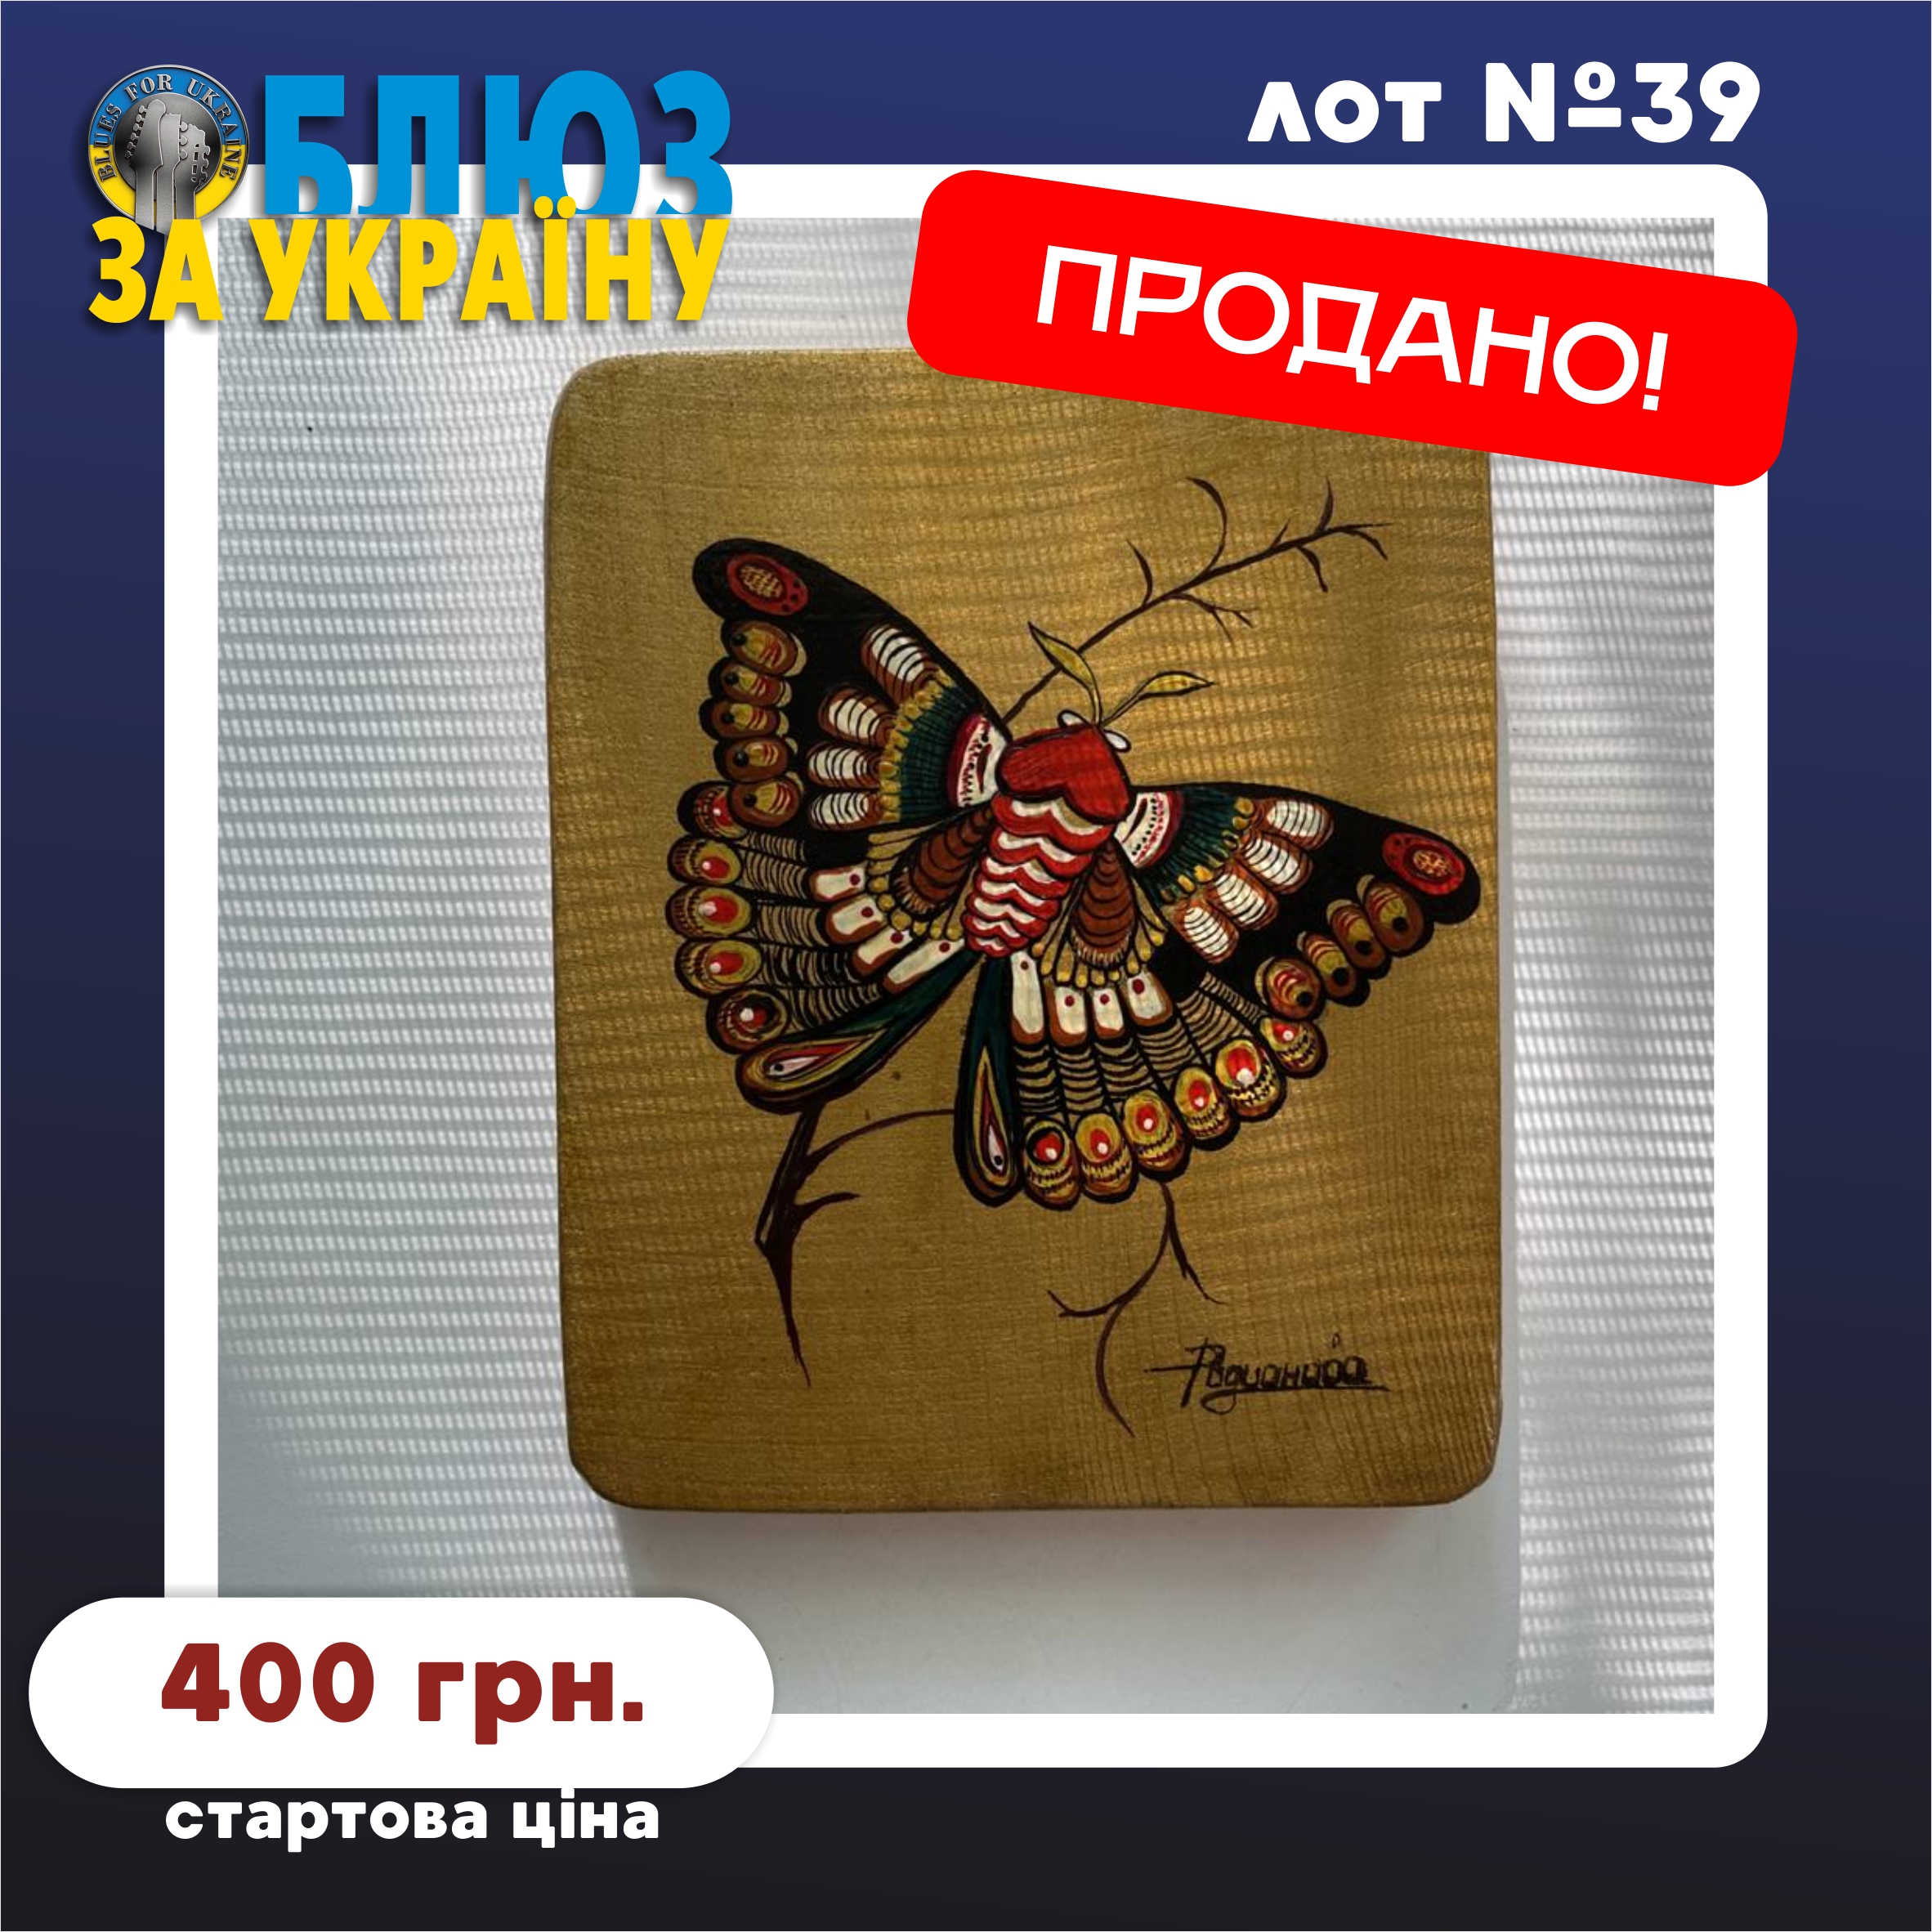 Lot №39. Дерев'яне панно "Метелик" (Wooden panel "Butterfly")